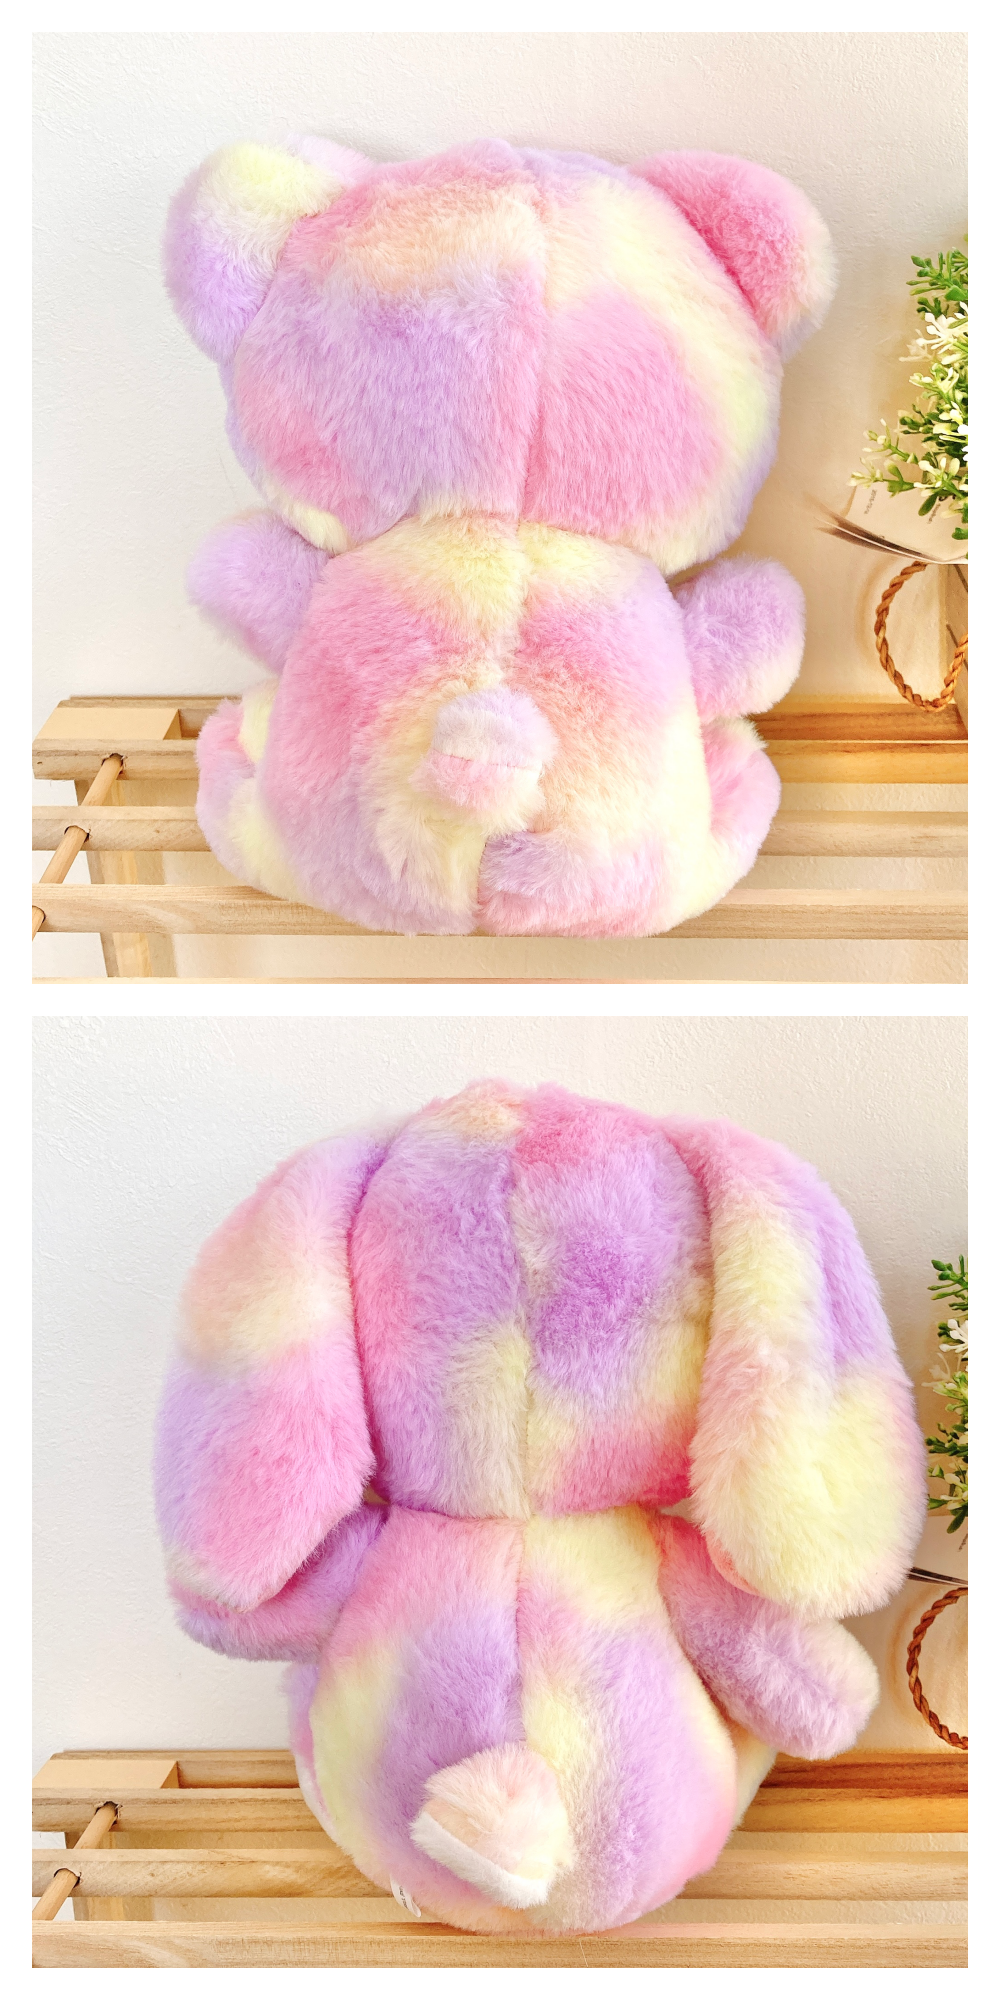 DAISO（ダイソー）のおすすめおもちゃ「Stuffed Toy ウサギ&amp;amp;クマ」